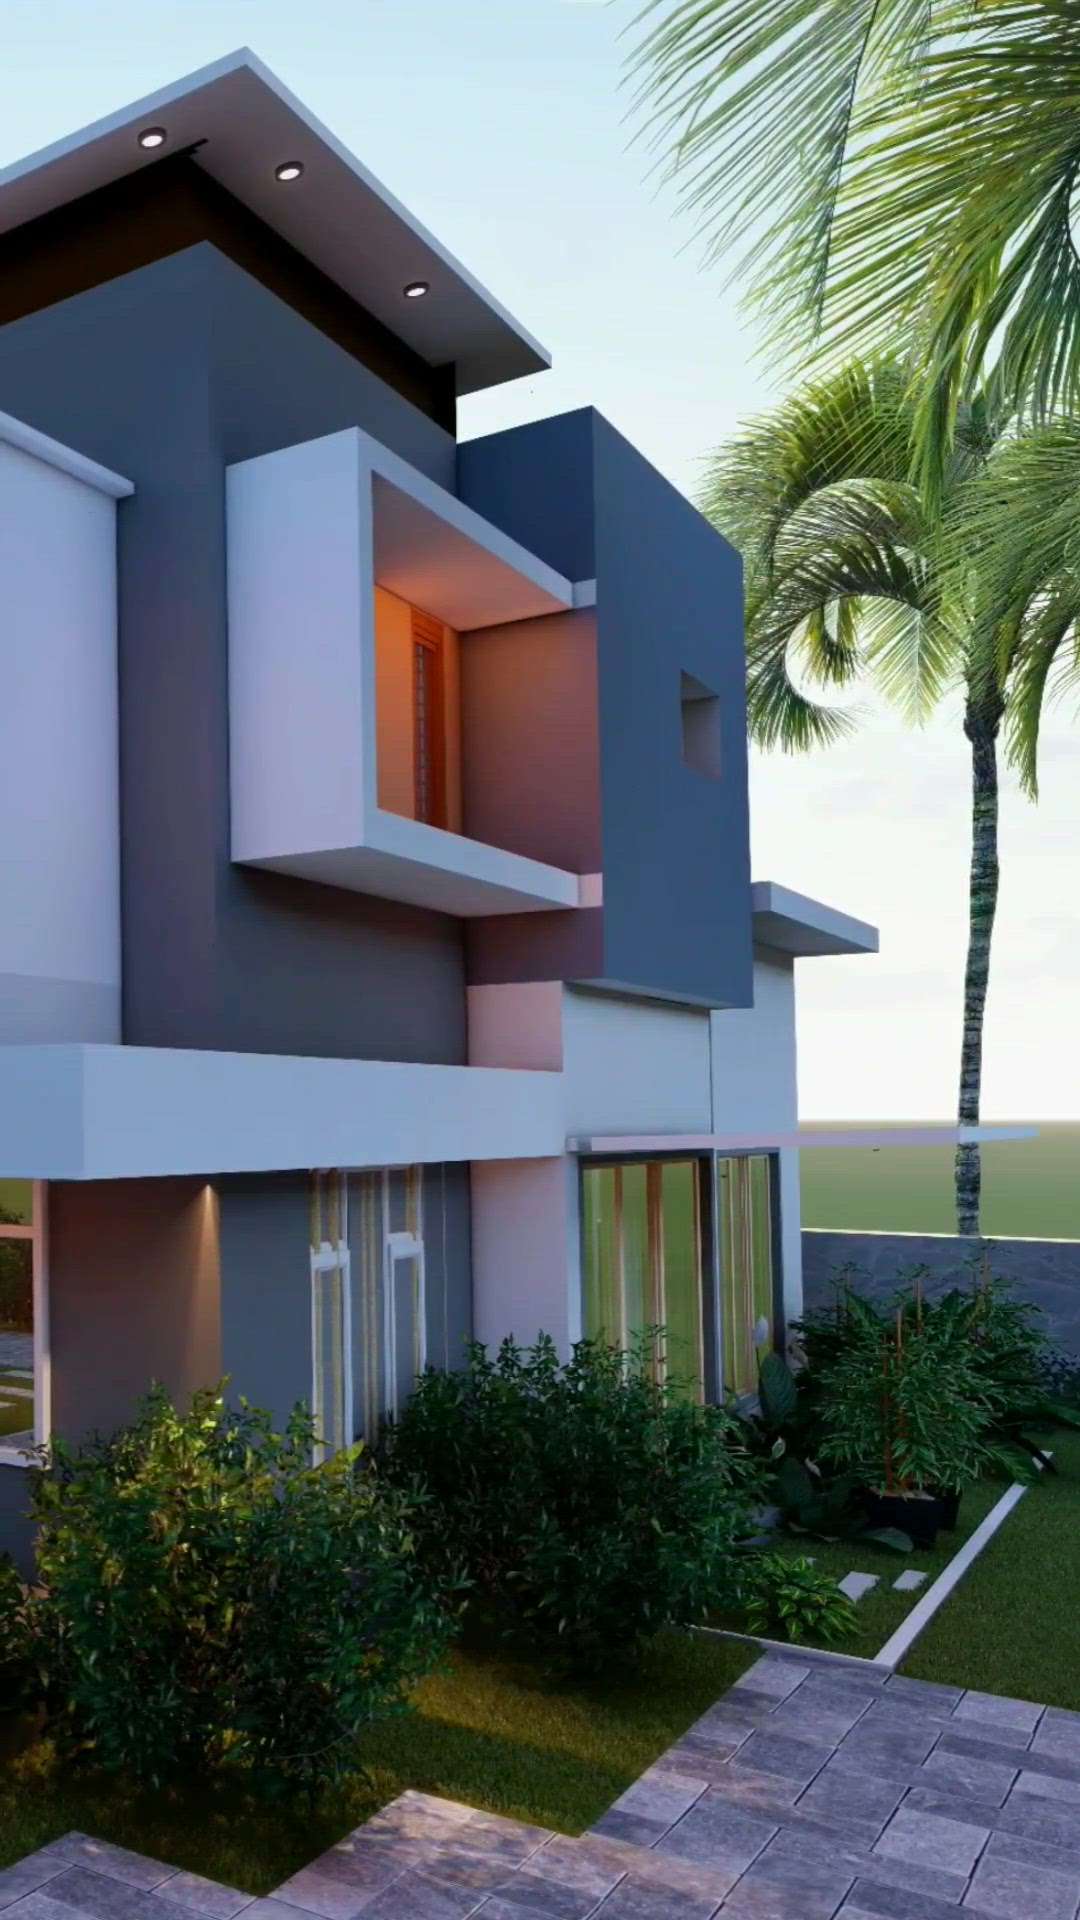 ഇഷ്ടപ്പെട്ടാൽ ലൈക്ക് ചെയ്‌തോളൂ 👌
3d elevation for Mr.sudheep &family @alappuzha 
 #3ddesigns  #keralahomedesignz  #conceptdesign  #customised  #ContemporaryHouse  #modernminimalism  #koloapp  #architecturedesigns hitecture